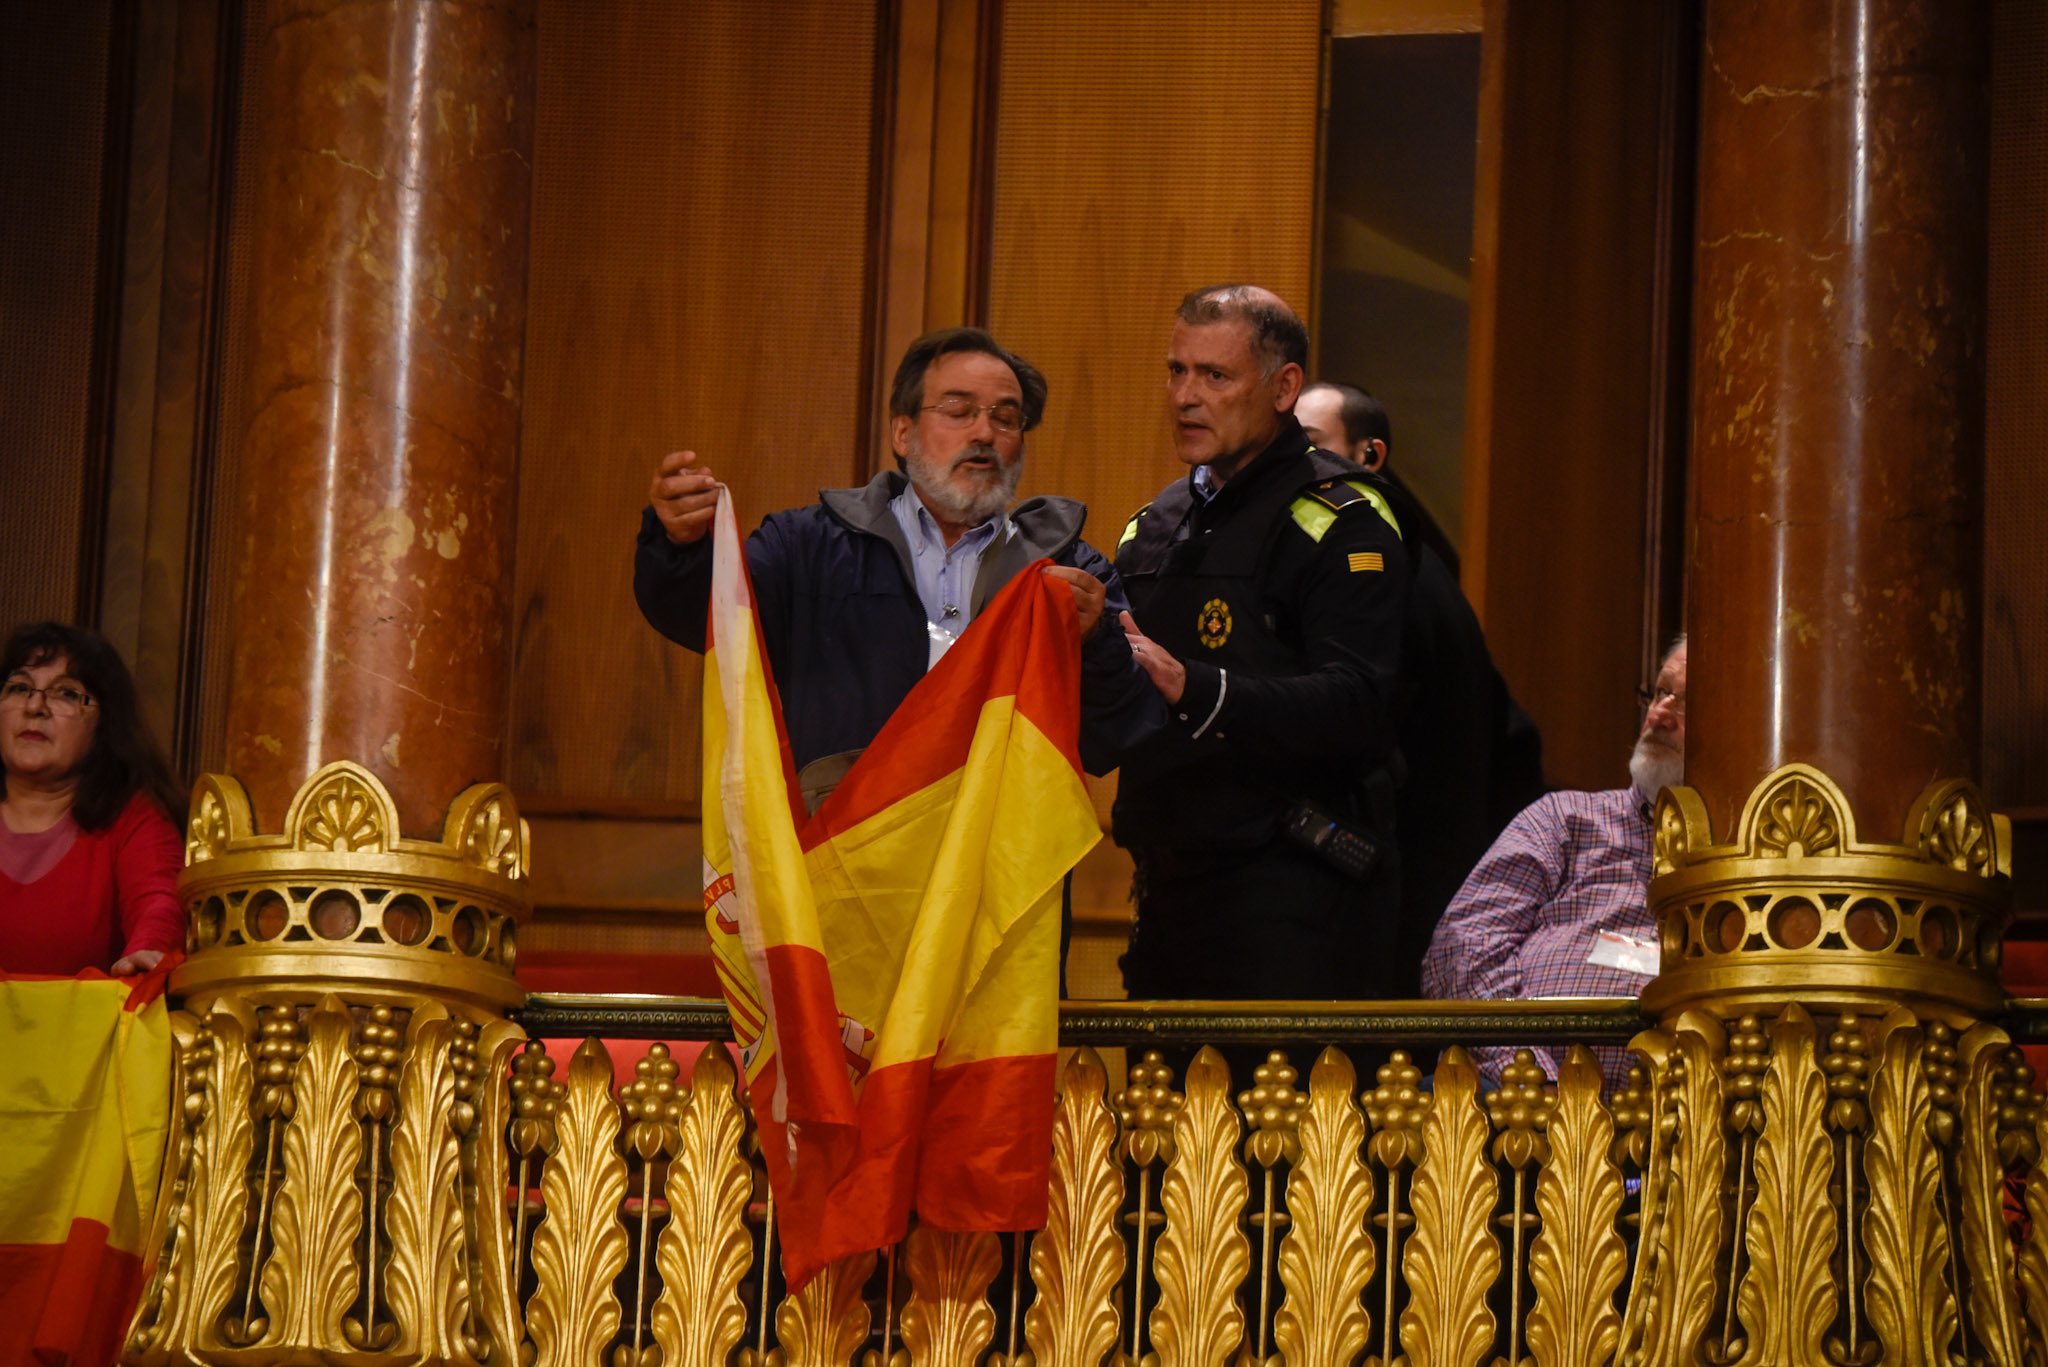 Interromp el ple cridant "somos españoles" i acaba expulsat per Colau